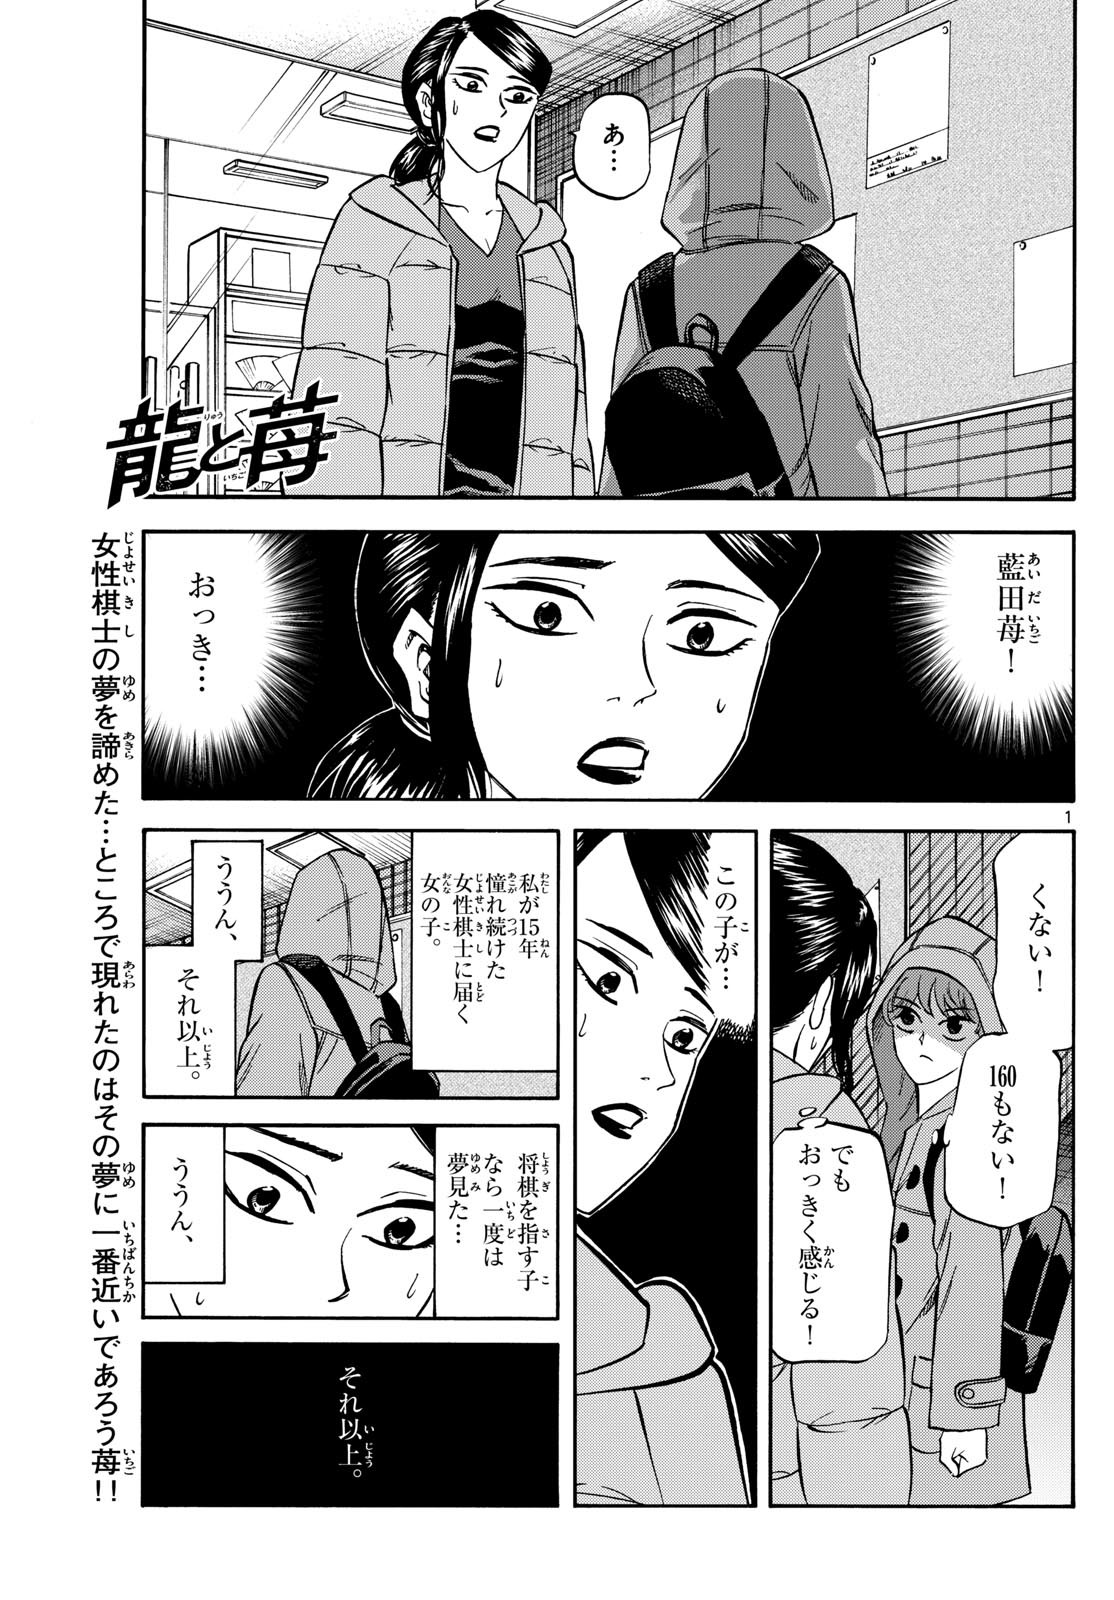 Ryu-to-Ichigo - Chapter 173 - Page 1